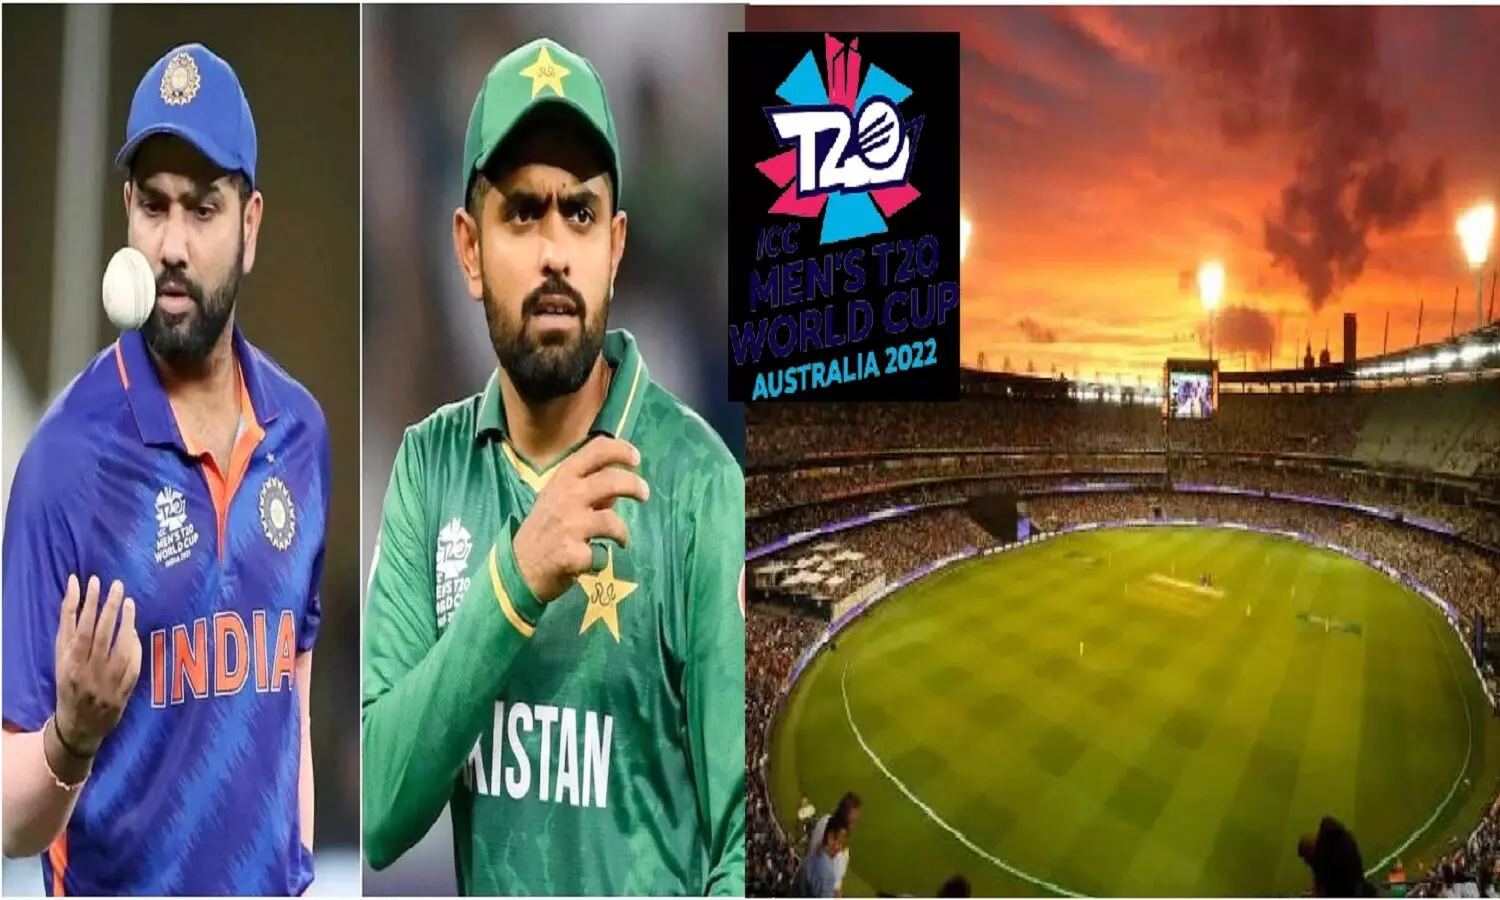 India Vs Pakistan Match: मेलबर्न में इंडिया के सामने नहीं टिक सकती पाकिस्तान! भारत Vs पाकिस्तान का मैच हम ही जीतेंगे